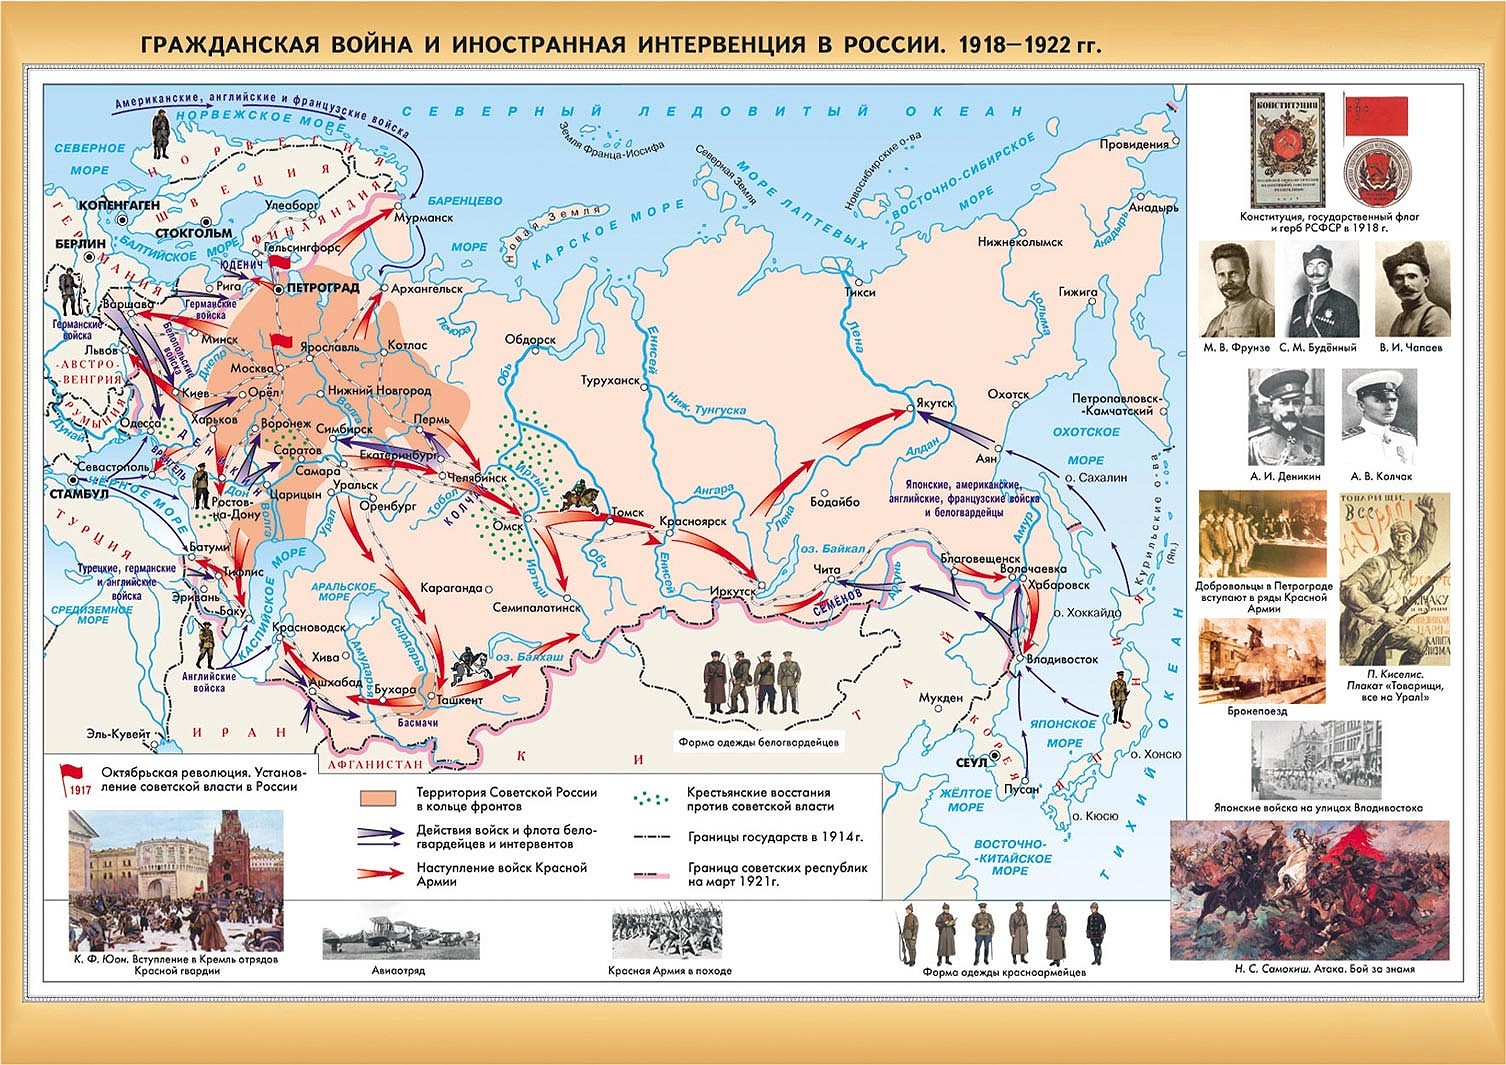 Интервенция и оккупация России западными странами в период Гражданской войны